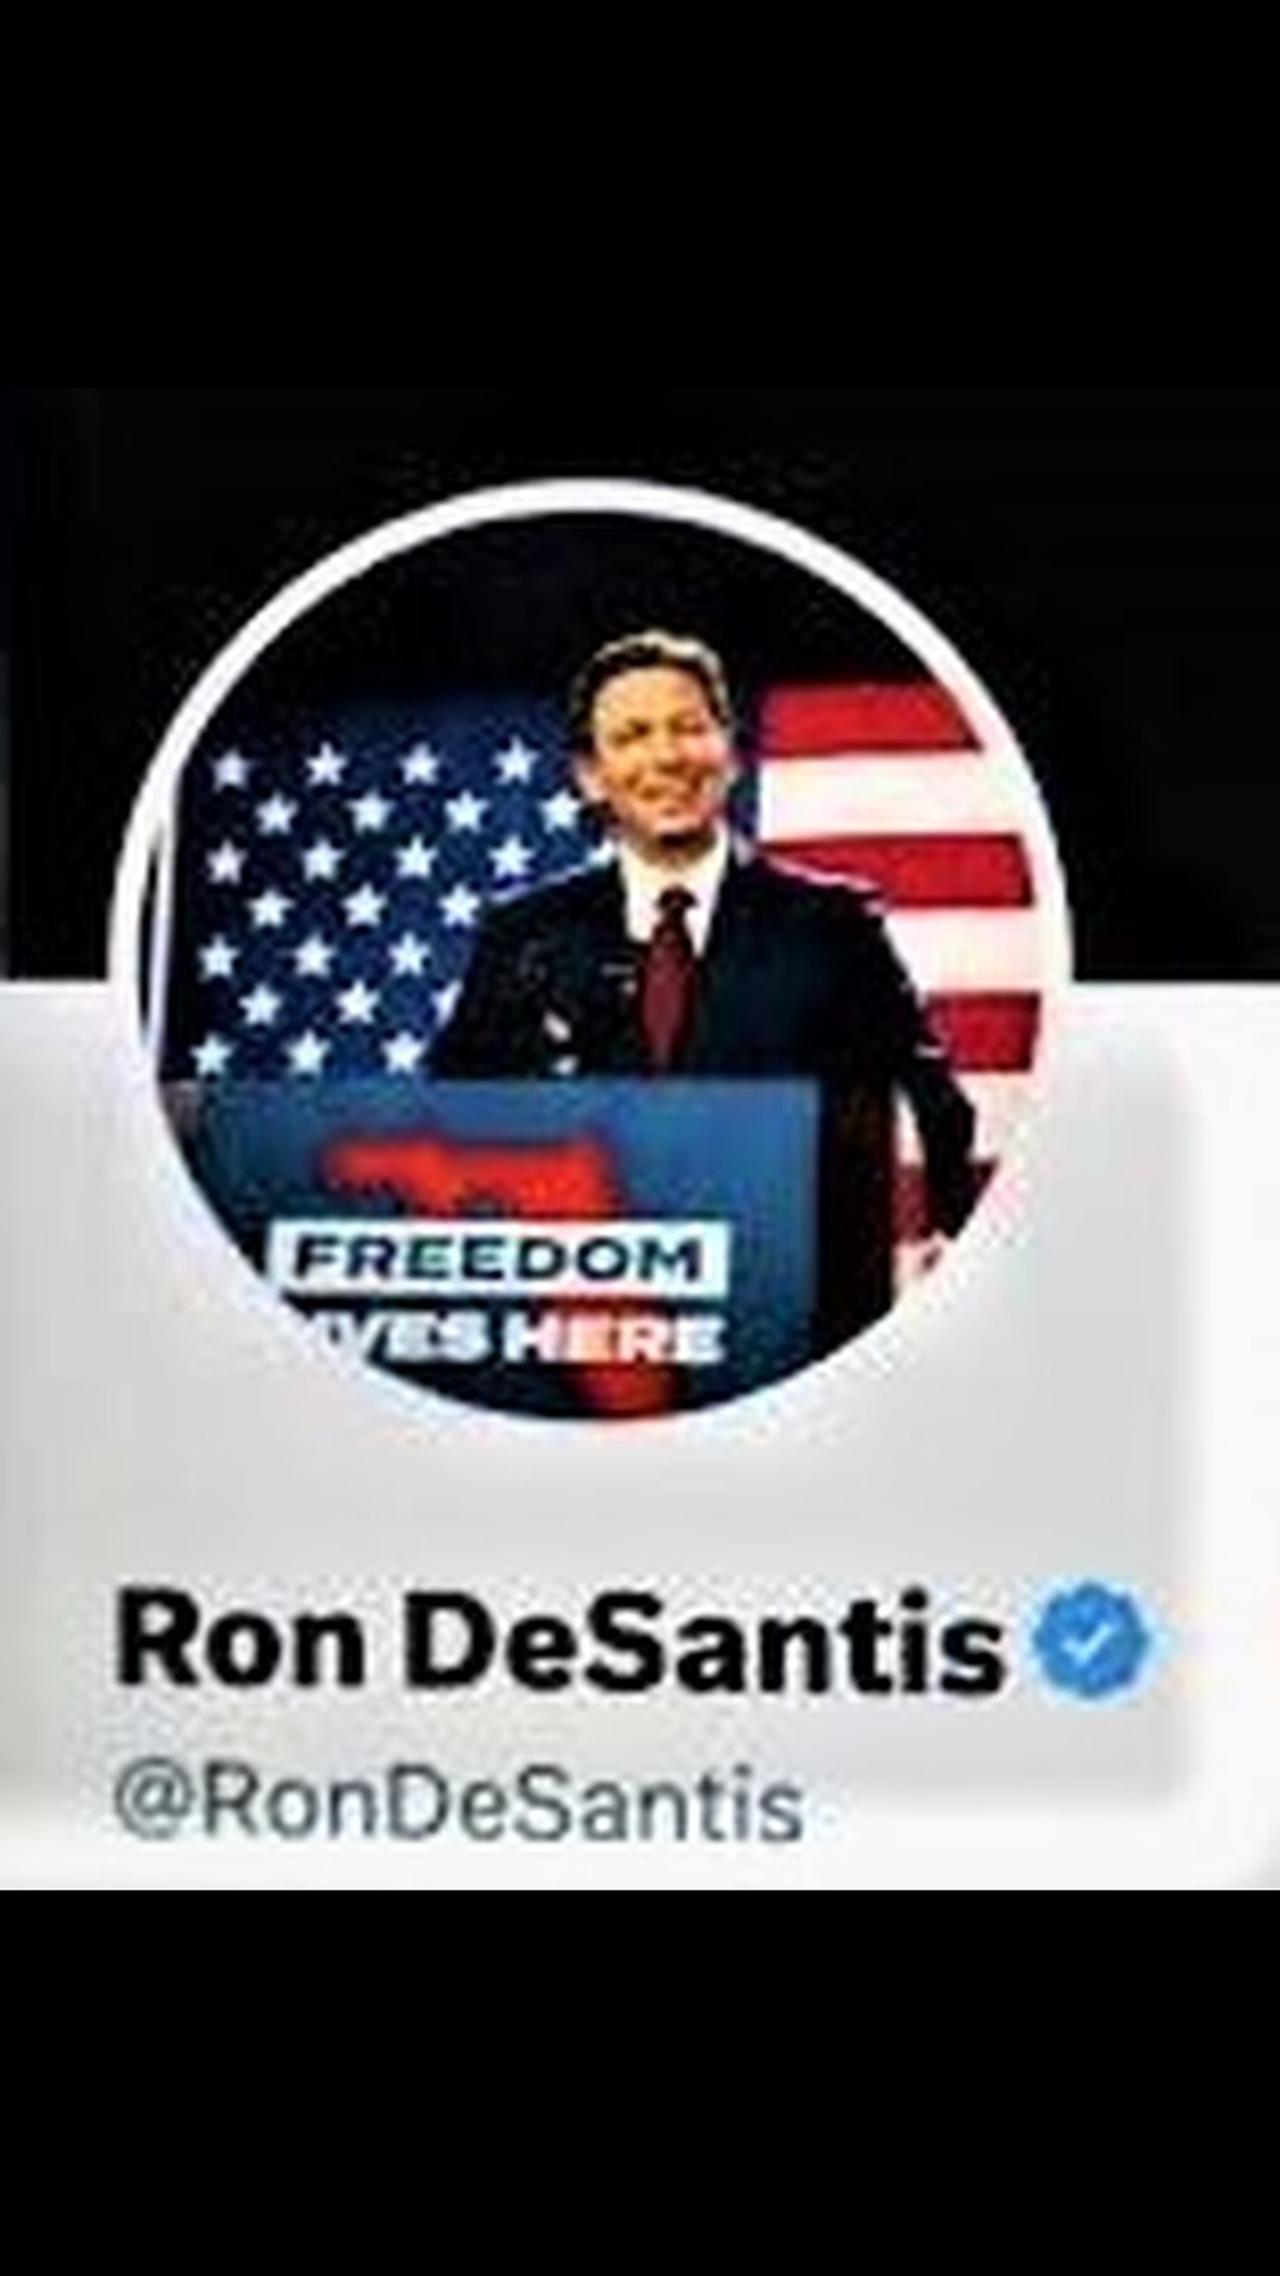 Ron DeSantis Announcement (Full Twitter space)